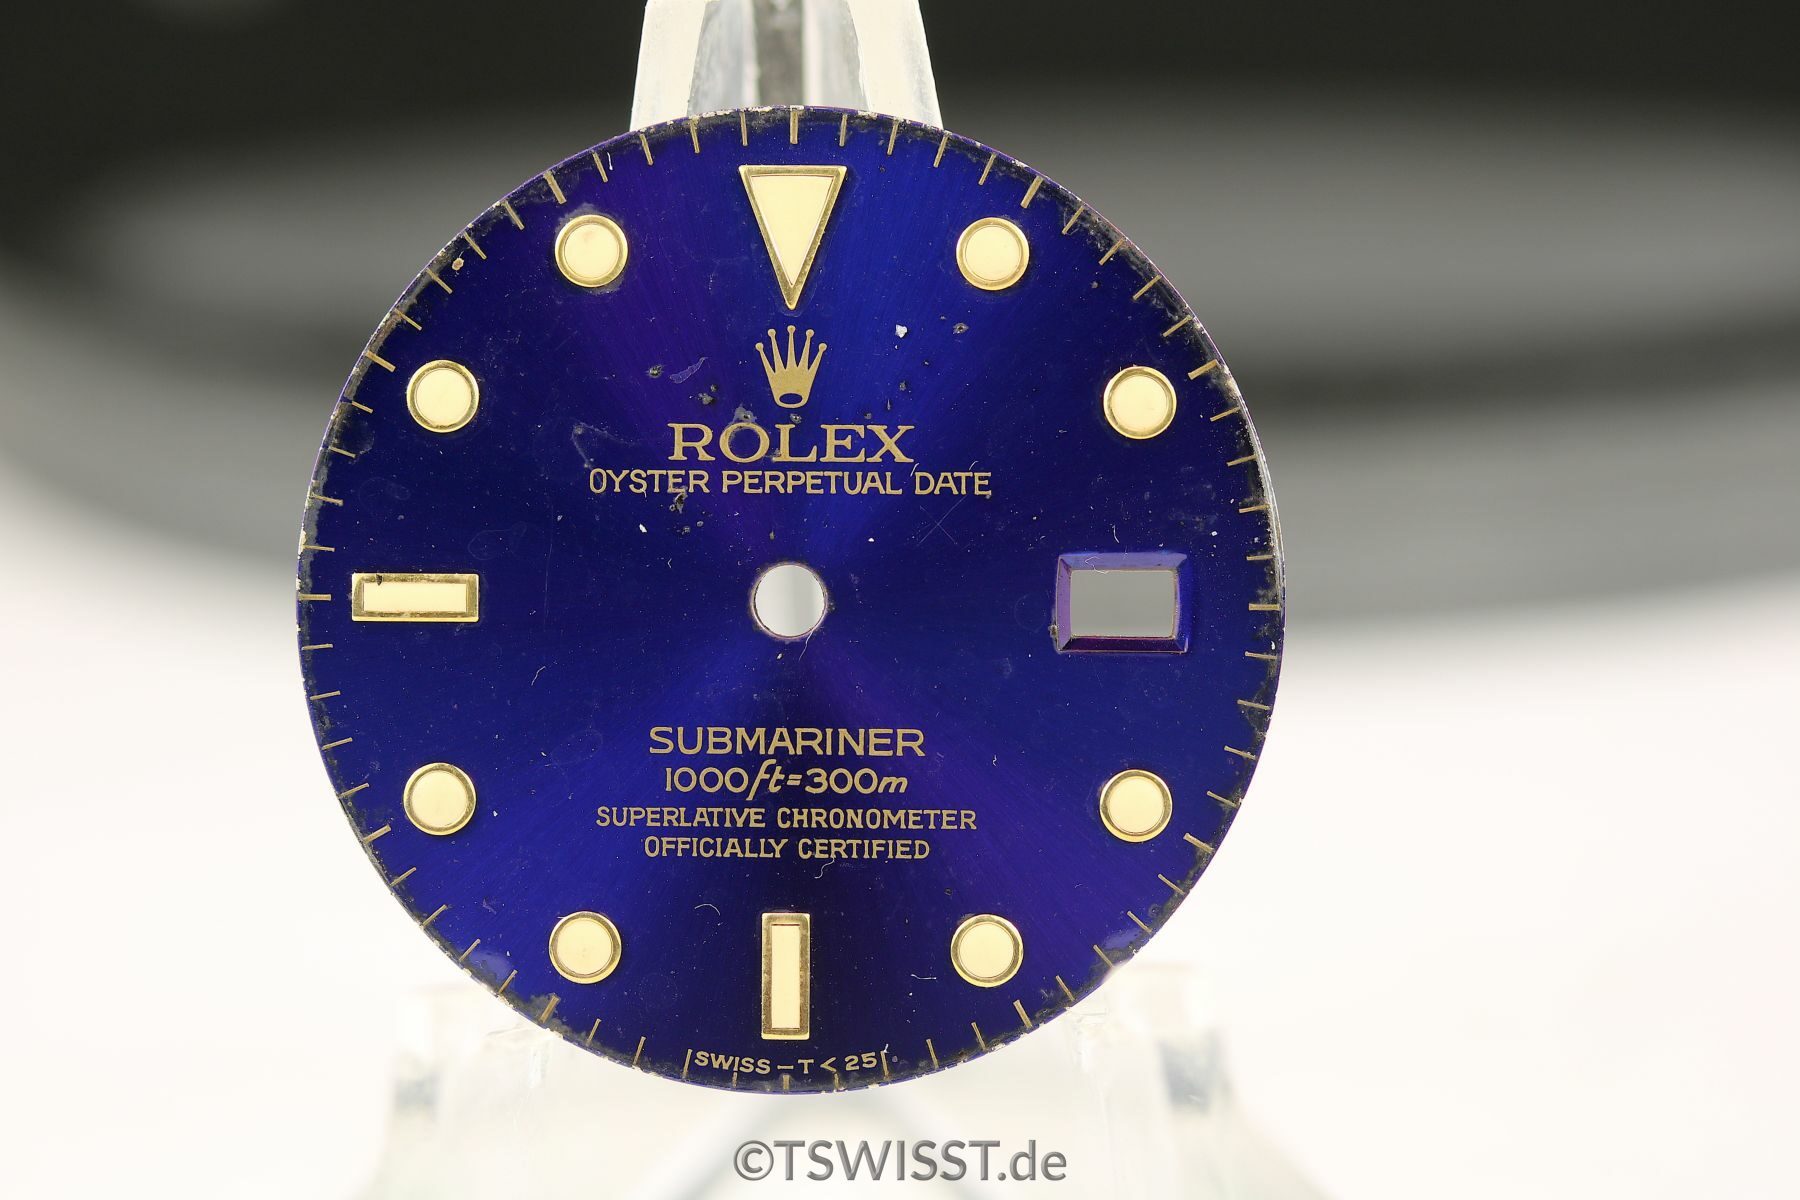 rolex Submariner 16613 dial